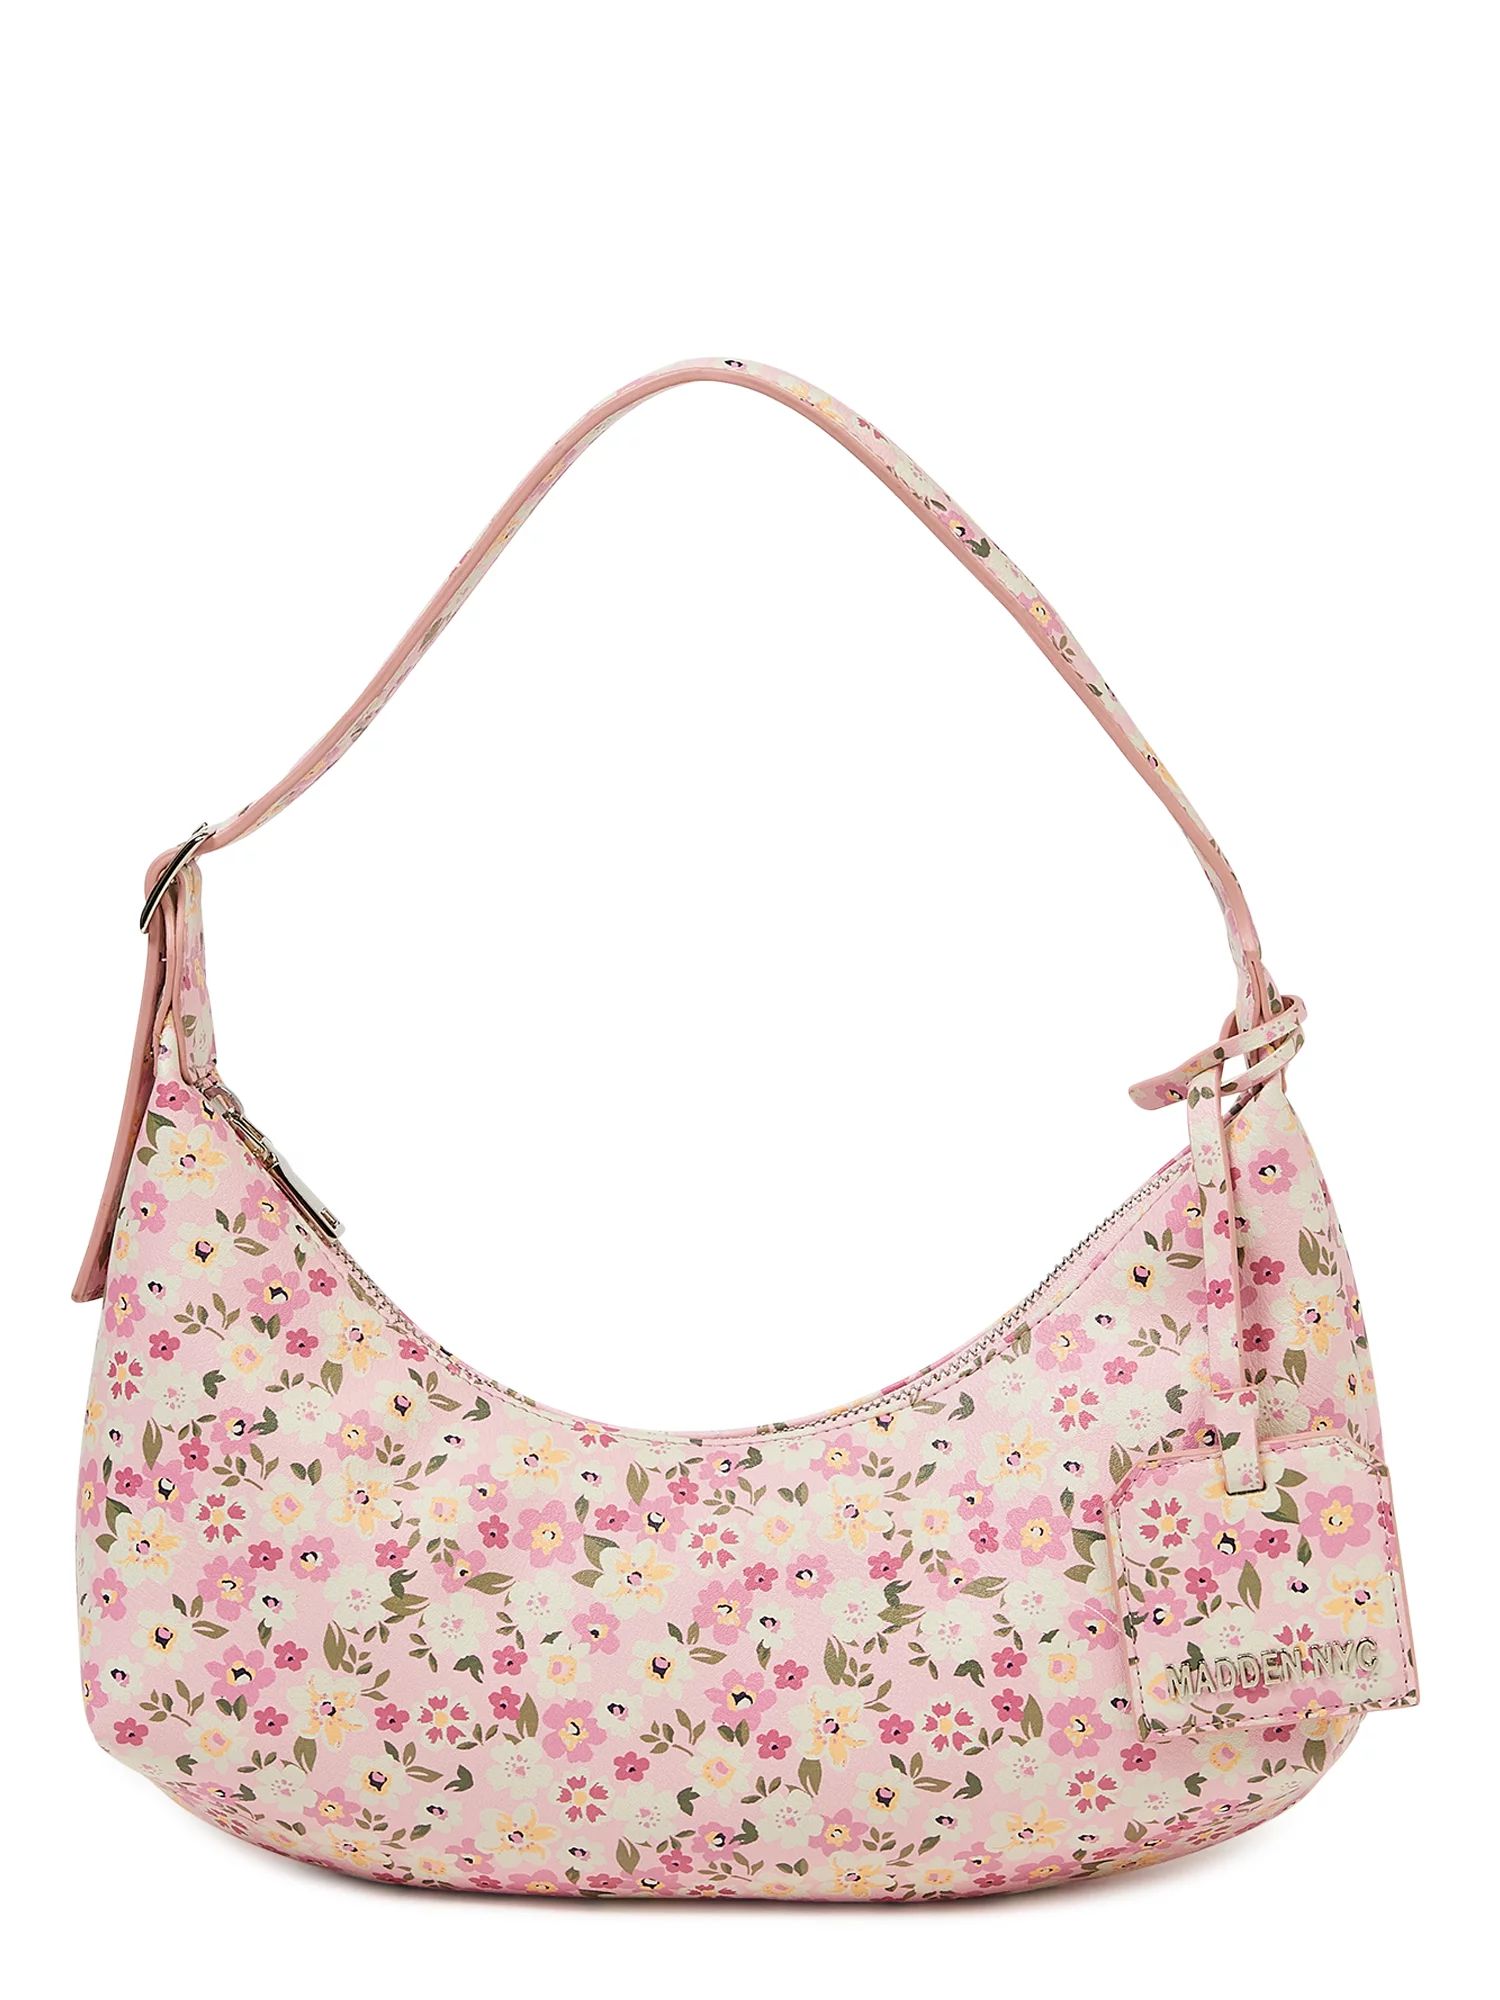 Madden NYC Women's Shoulder Bag Floral Pink | Walmart (US)